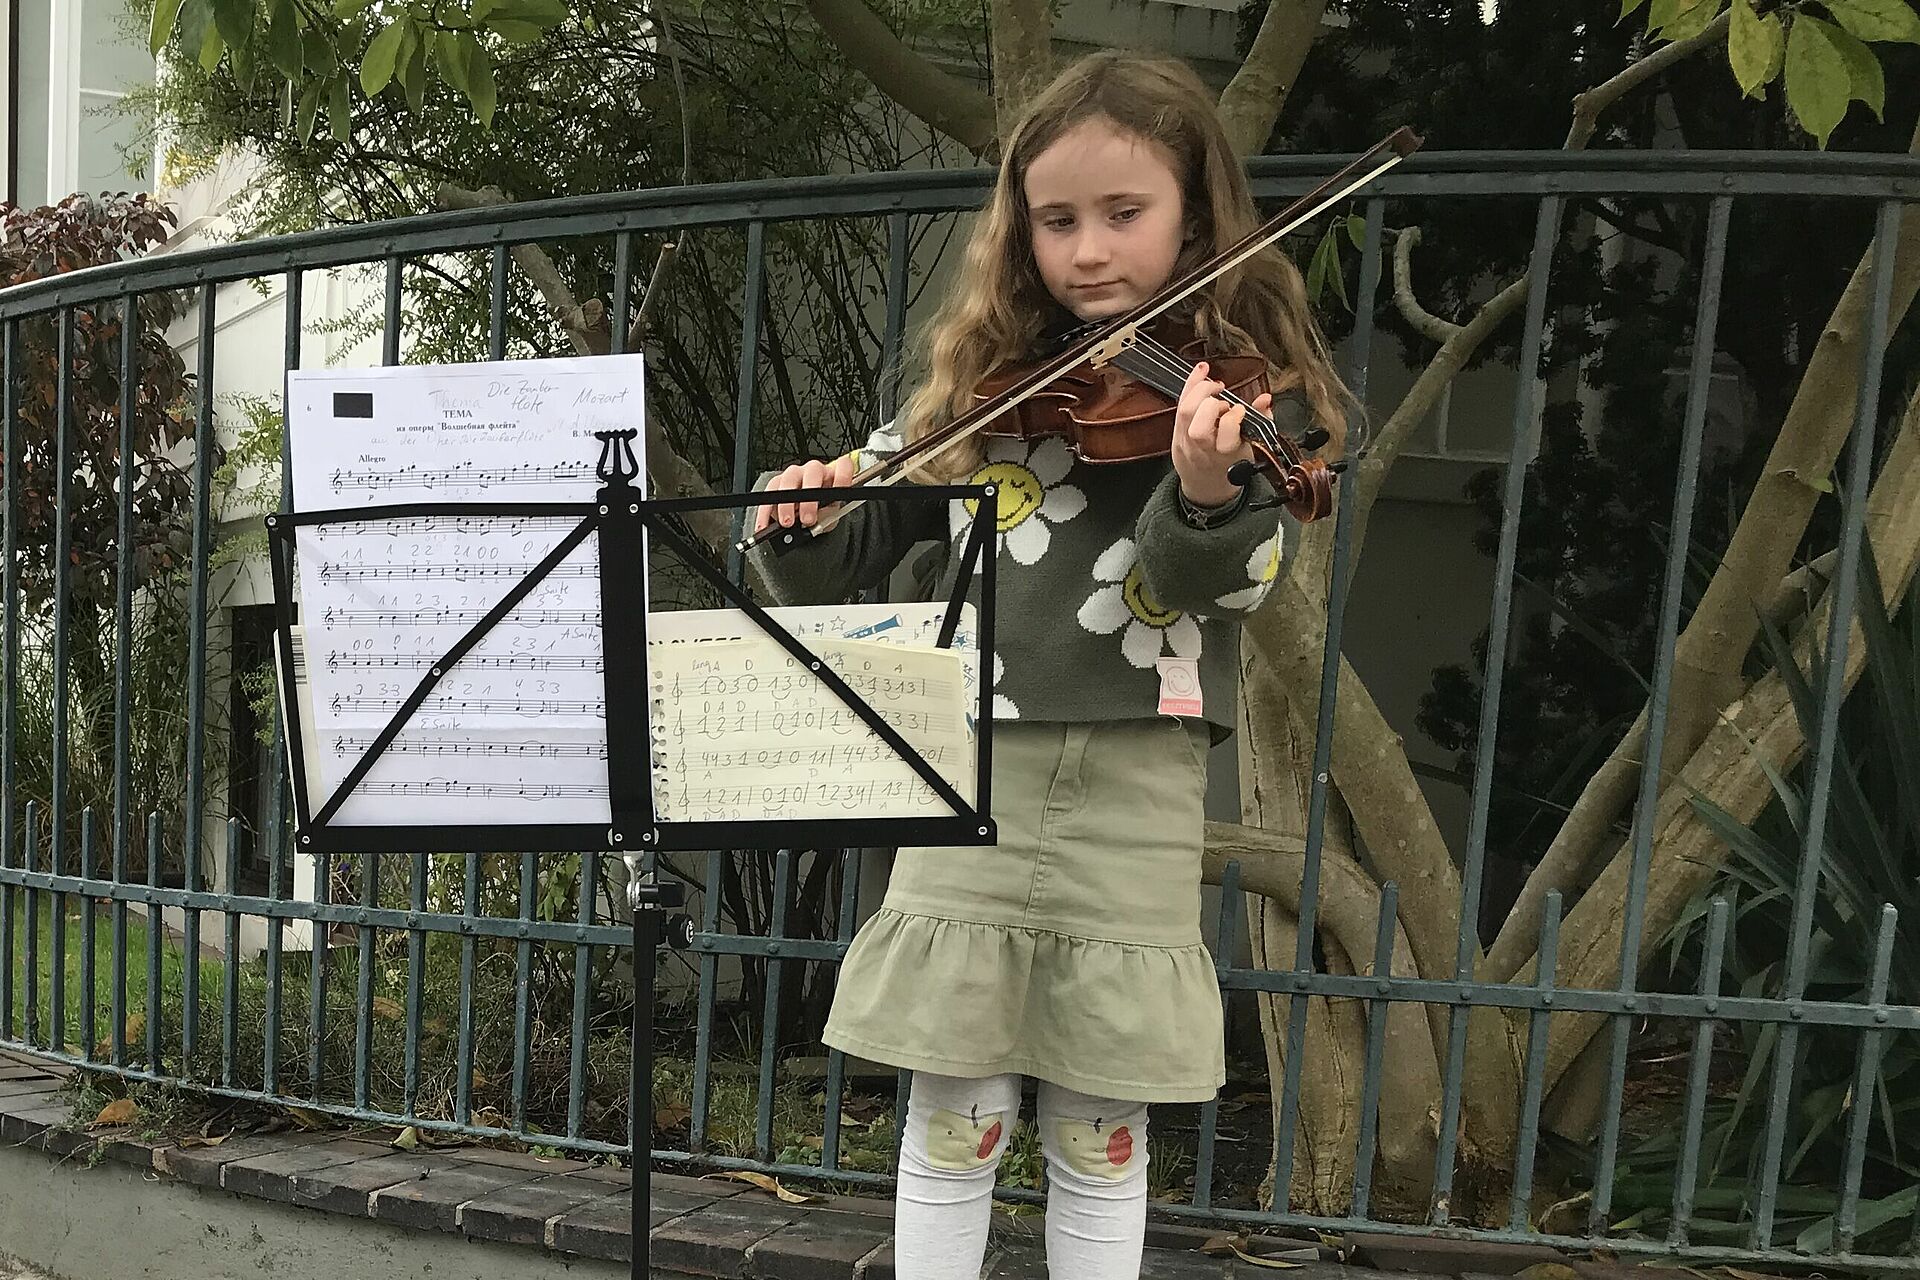 Das neunjährige Mädchen steht mit seiner Geige an einer Straßenecke und musiziert. Vor ihm steht der geöffnete Geigenkasten auf dem Boden, worin bereits gespendetes Geld liegt sowie eine Zeichnung von einem Sammelschiffchen.